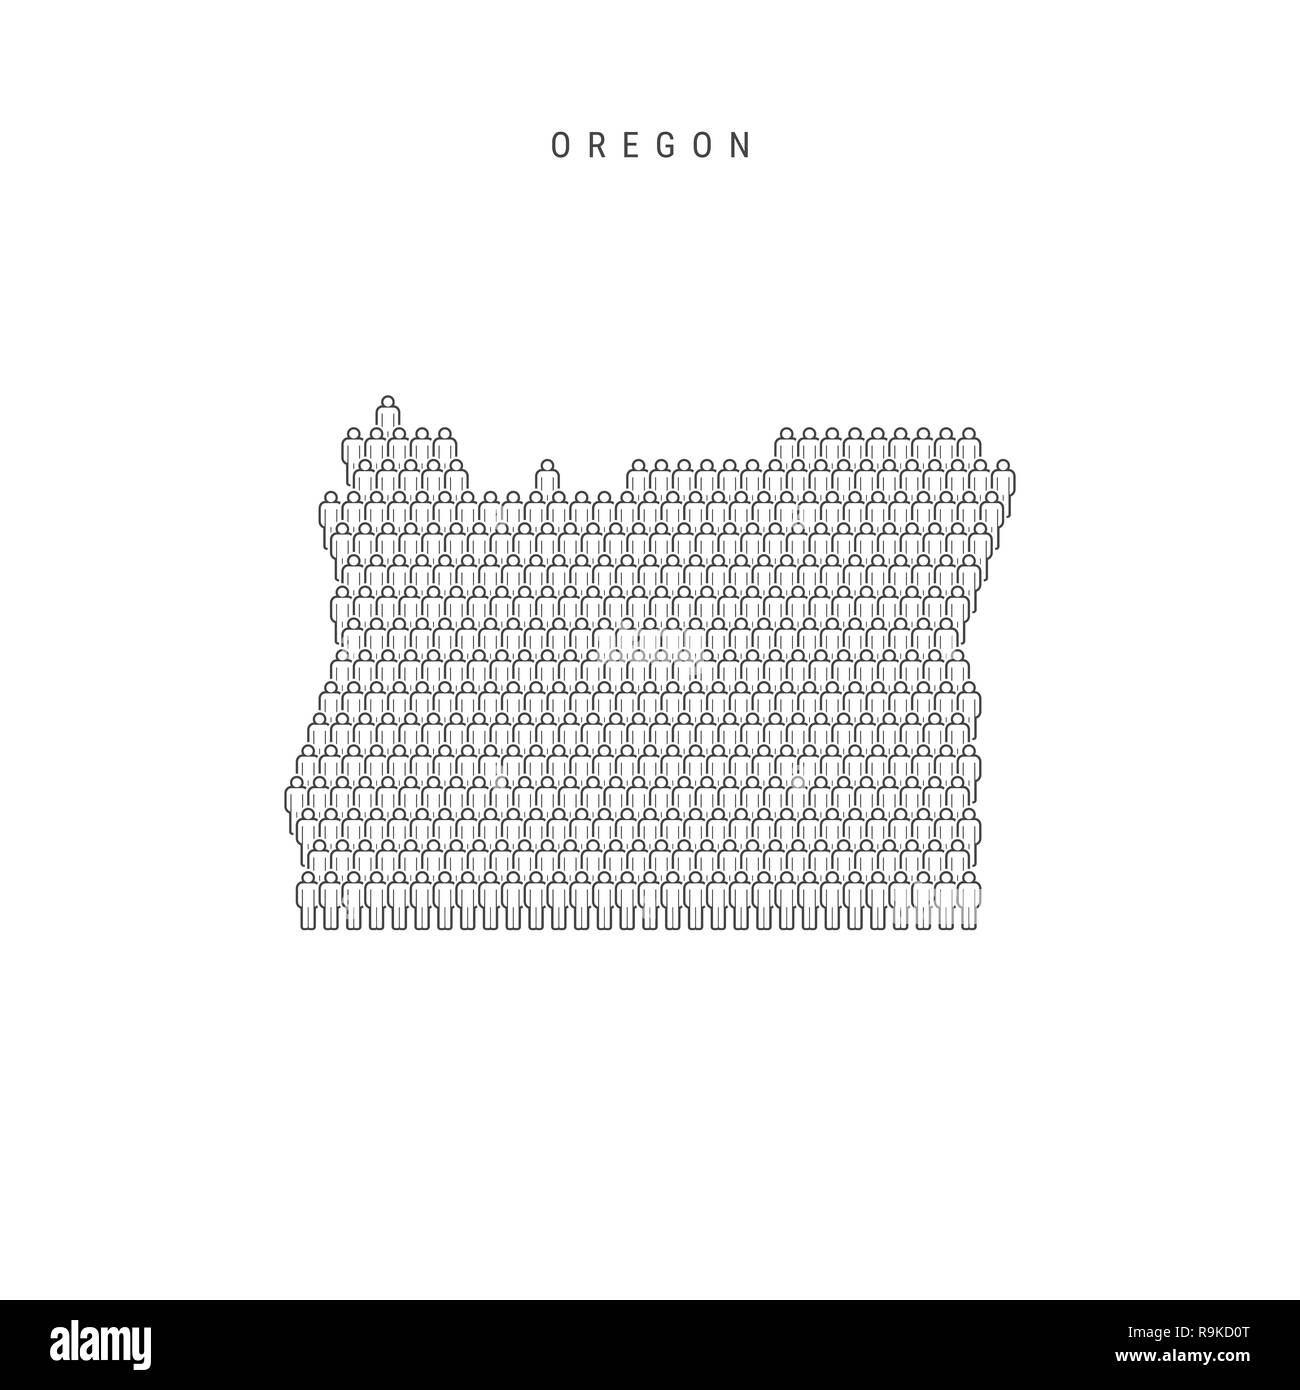 Leute Karte von Oregon, USA. Stilisierte Silhouette, Leute in der Form einer Karte von Oregon. Oregon Bevölkerung. Abbildung isoliert auf weißem B Stockfoto